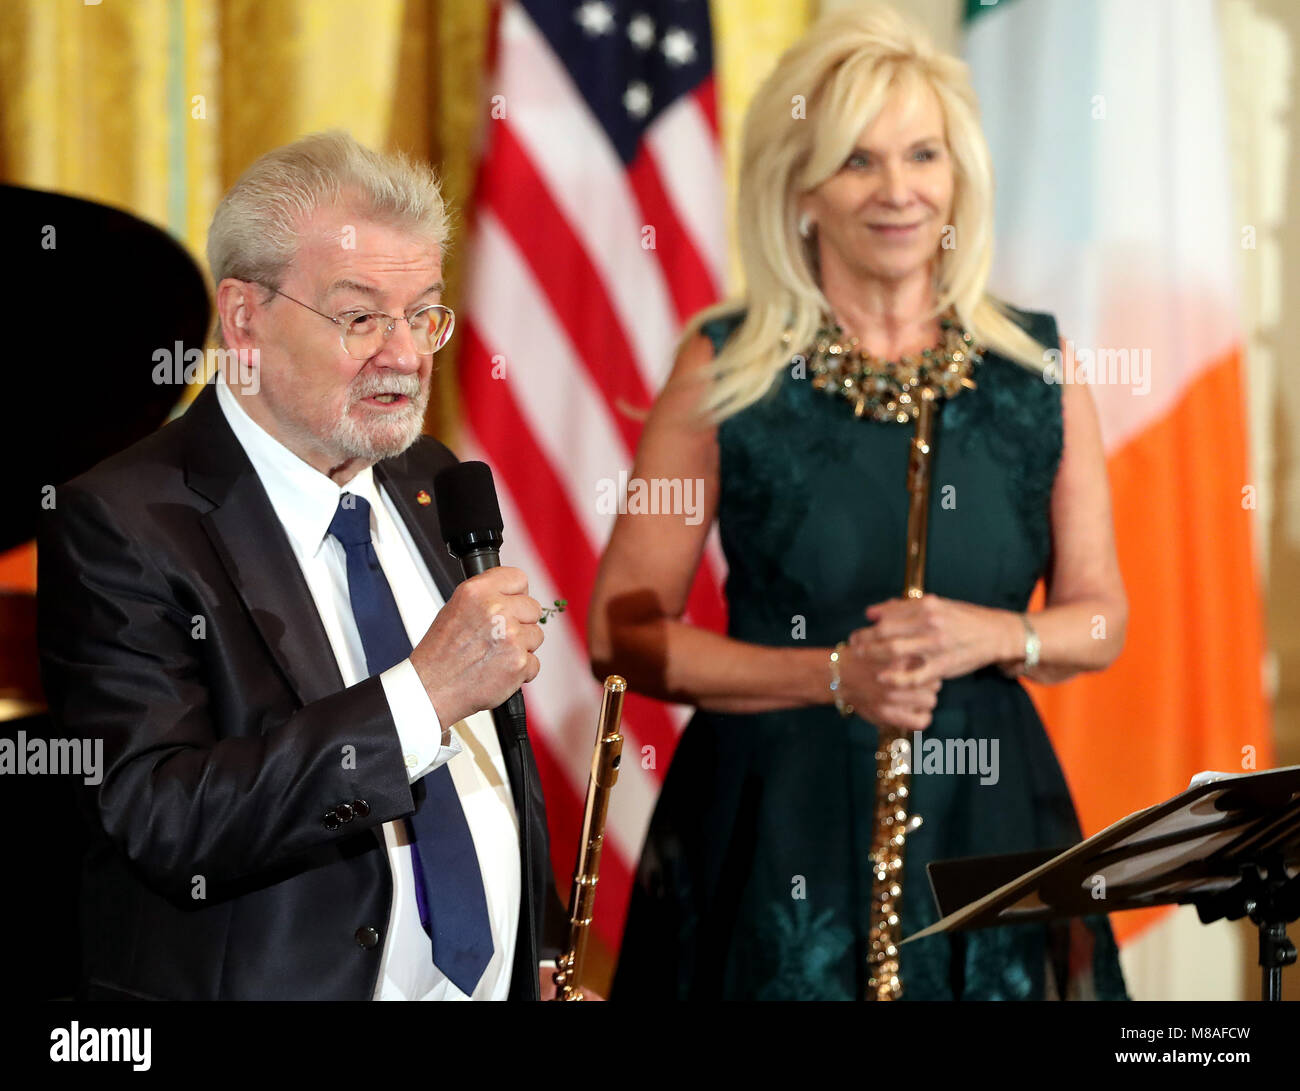 Flûtiste Sir James Galway Galway Dame et la foule à la Maison blanche au cours de l'Assemblée shamrock présentation cérémonie à la Maison Blanche à Washington DC, USA Banque D'Images